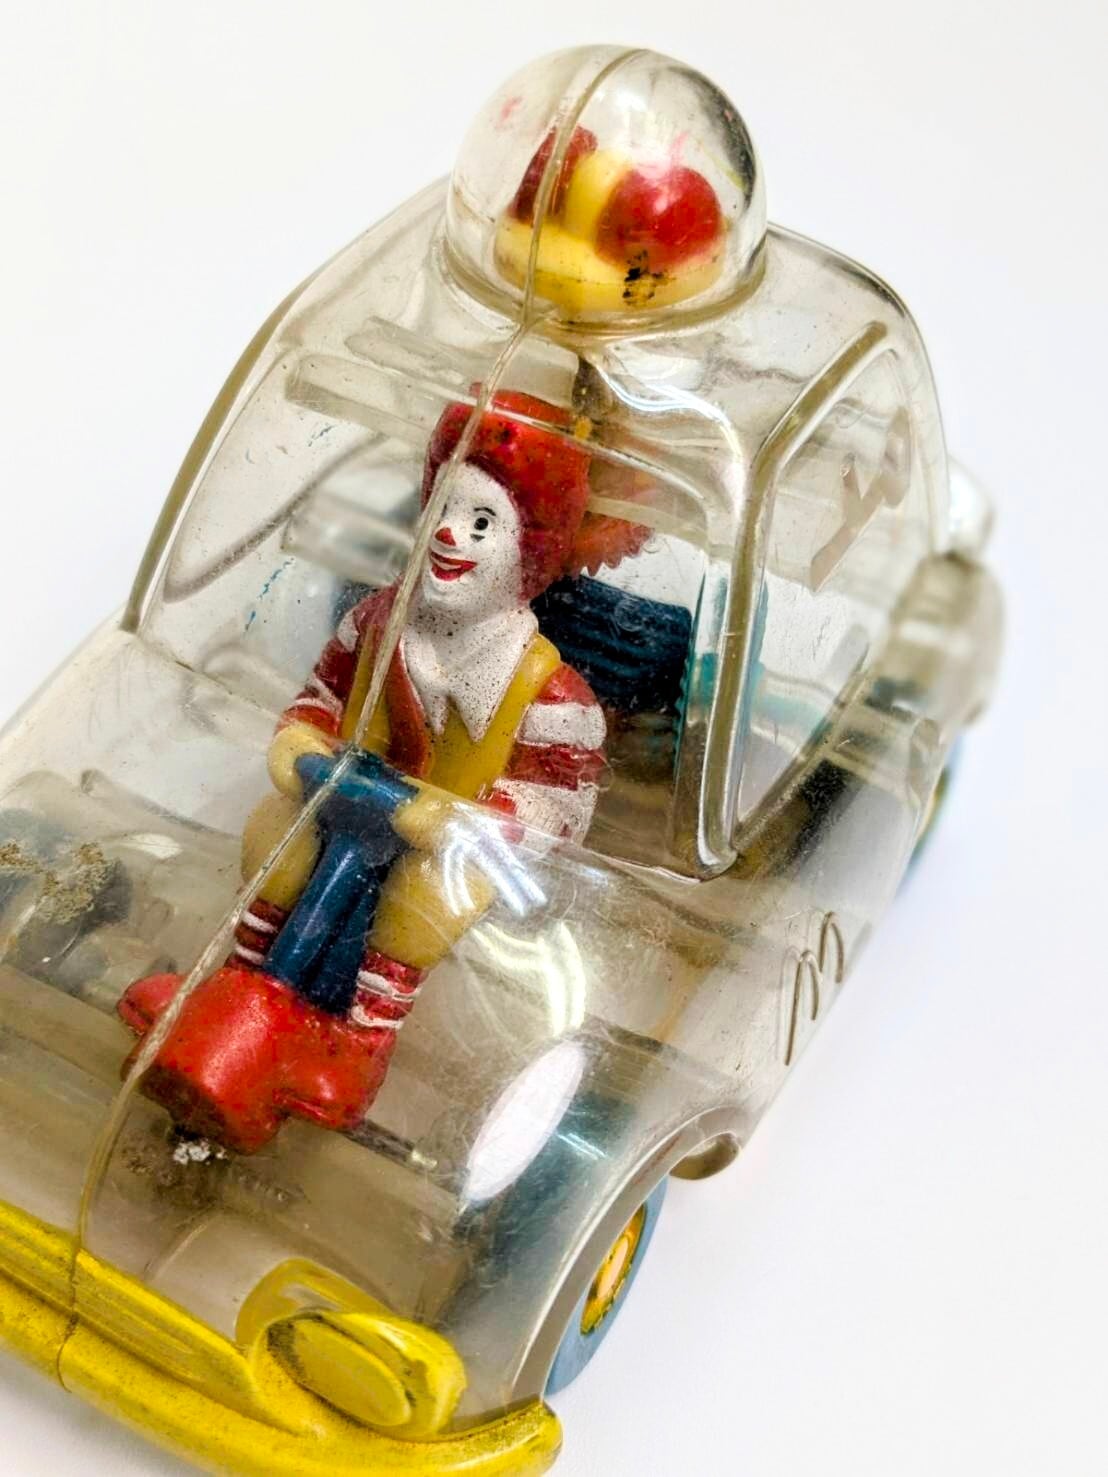 【マクドナルド ハッピーミール  透明ライダー  1996年製 ドナルド・マクドナルド McDonald's / 1996 X-Ray Riders Meal Toy "Ronald McDonald"】〘VINTAGE ビンテージ〙 〚アメリカン雑貨 アメトイ〛